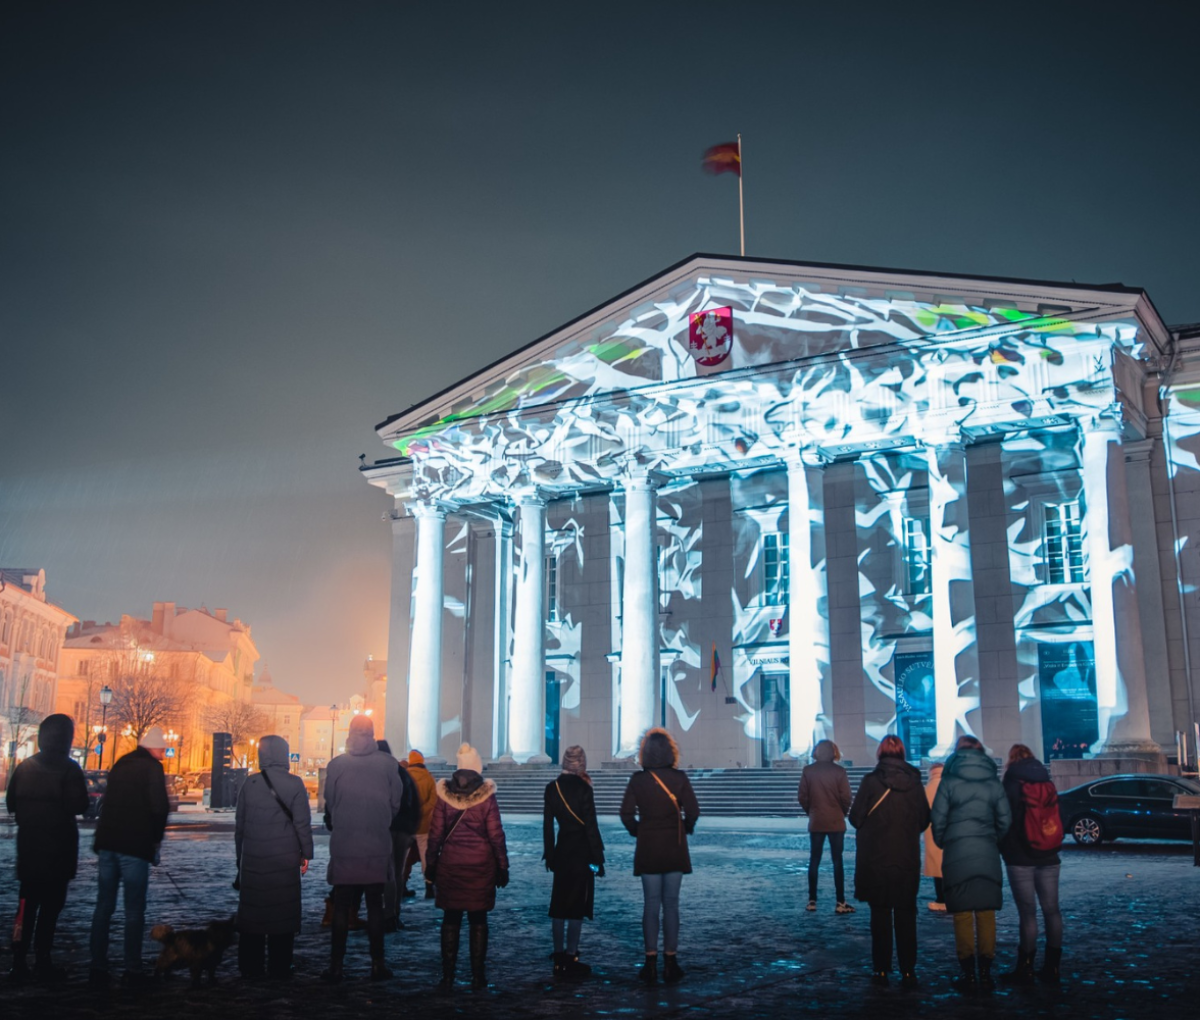 Vilnius Light Festival in winter, Vilnius, Lithuania